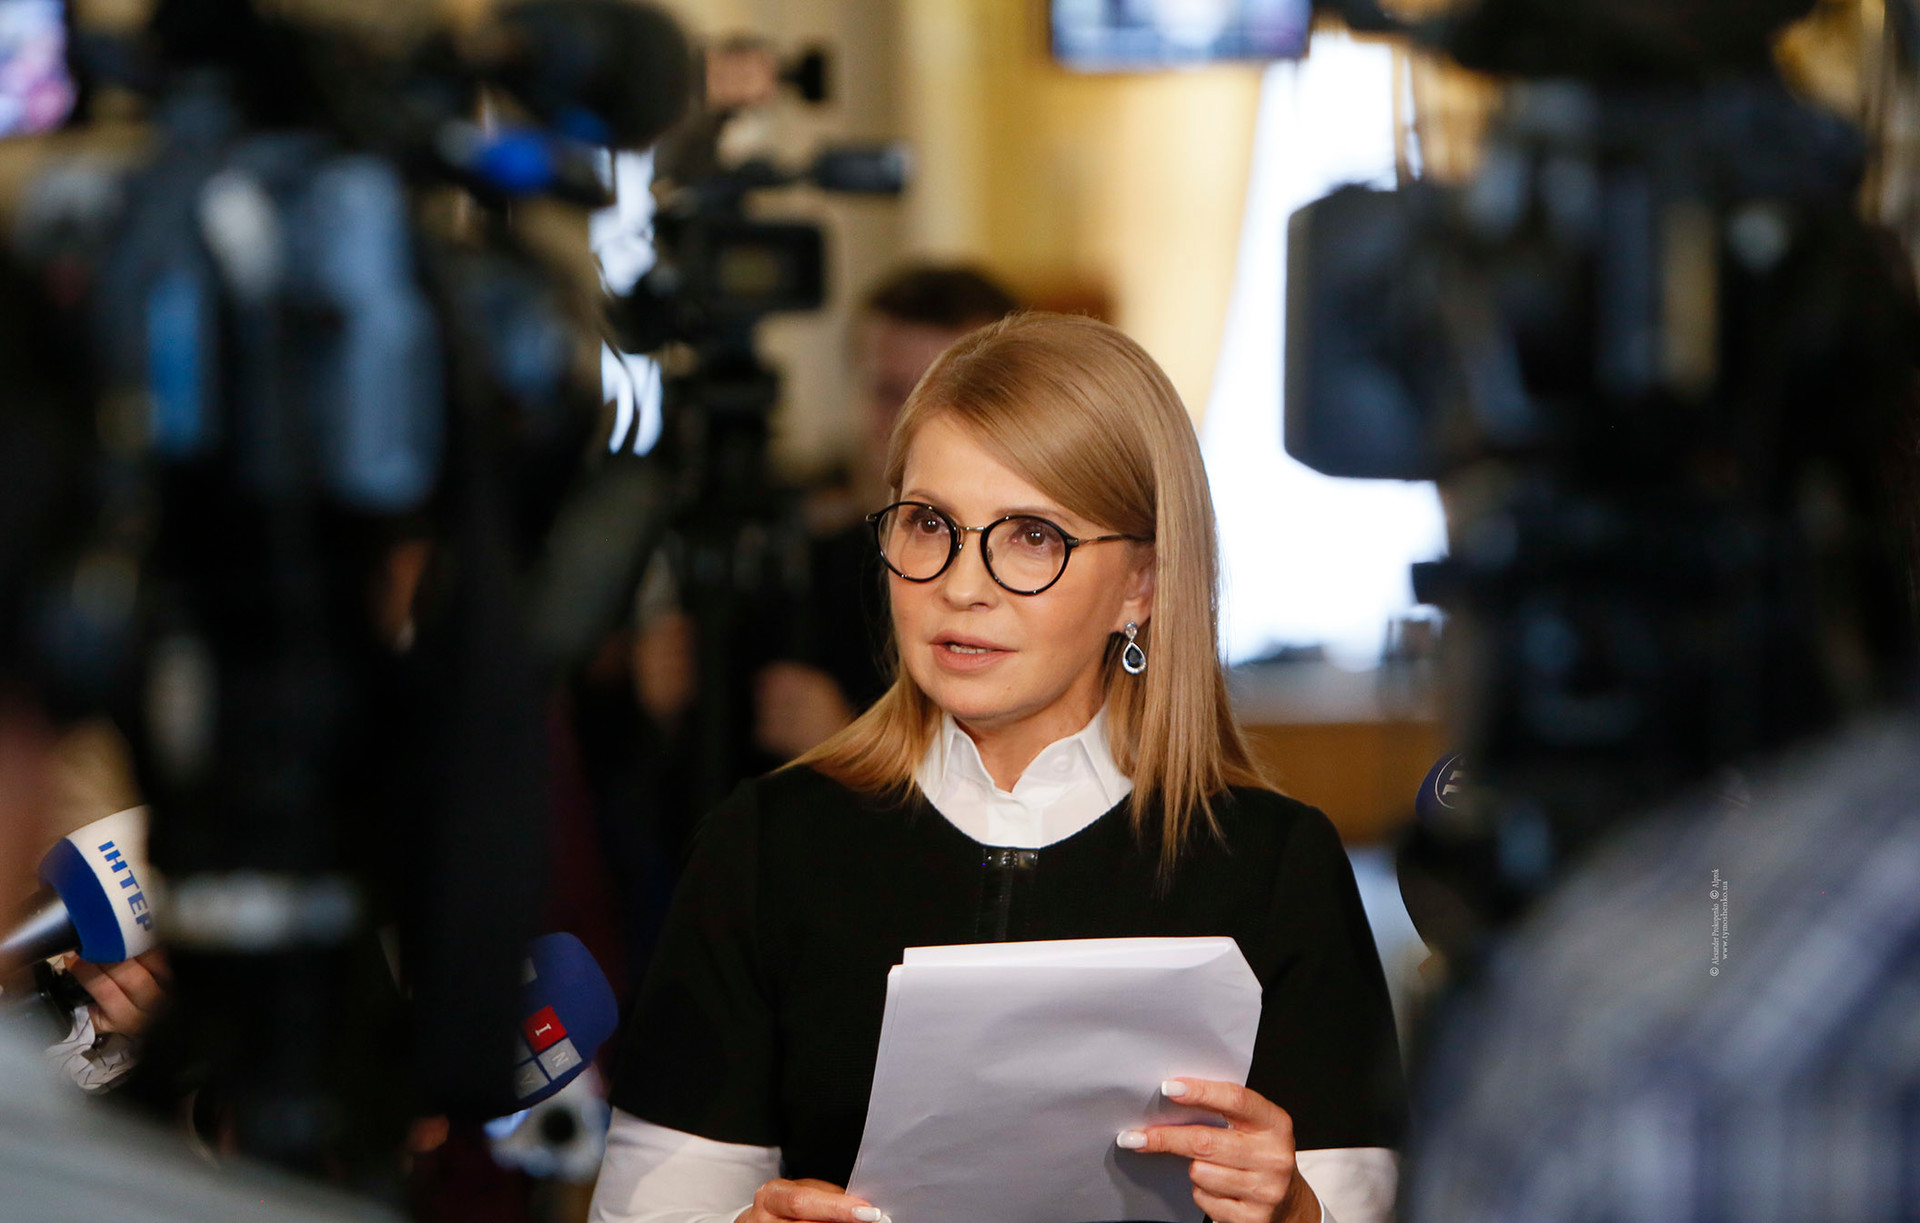 Юлія Тимошенко: Верховна Рада повинна ухвалити бюджет перемоги, а не бюджет війни проти власних громадян